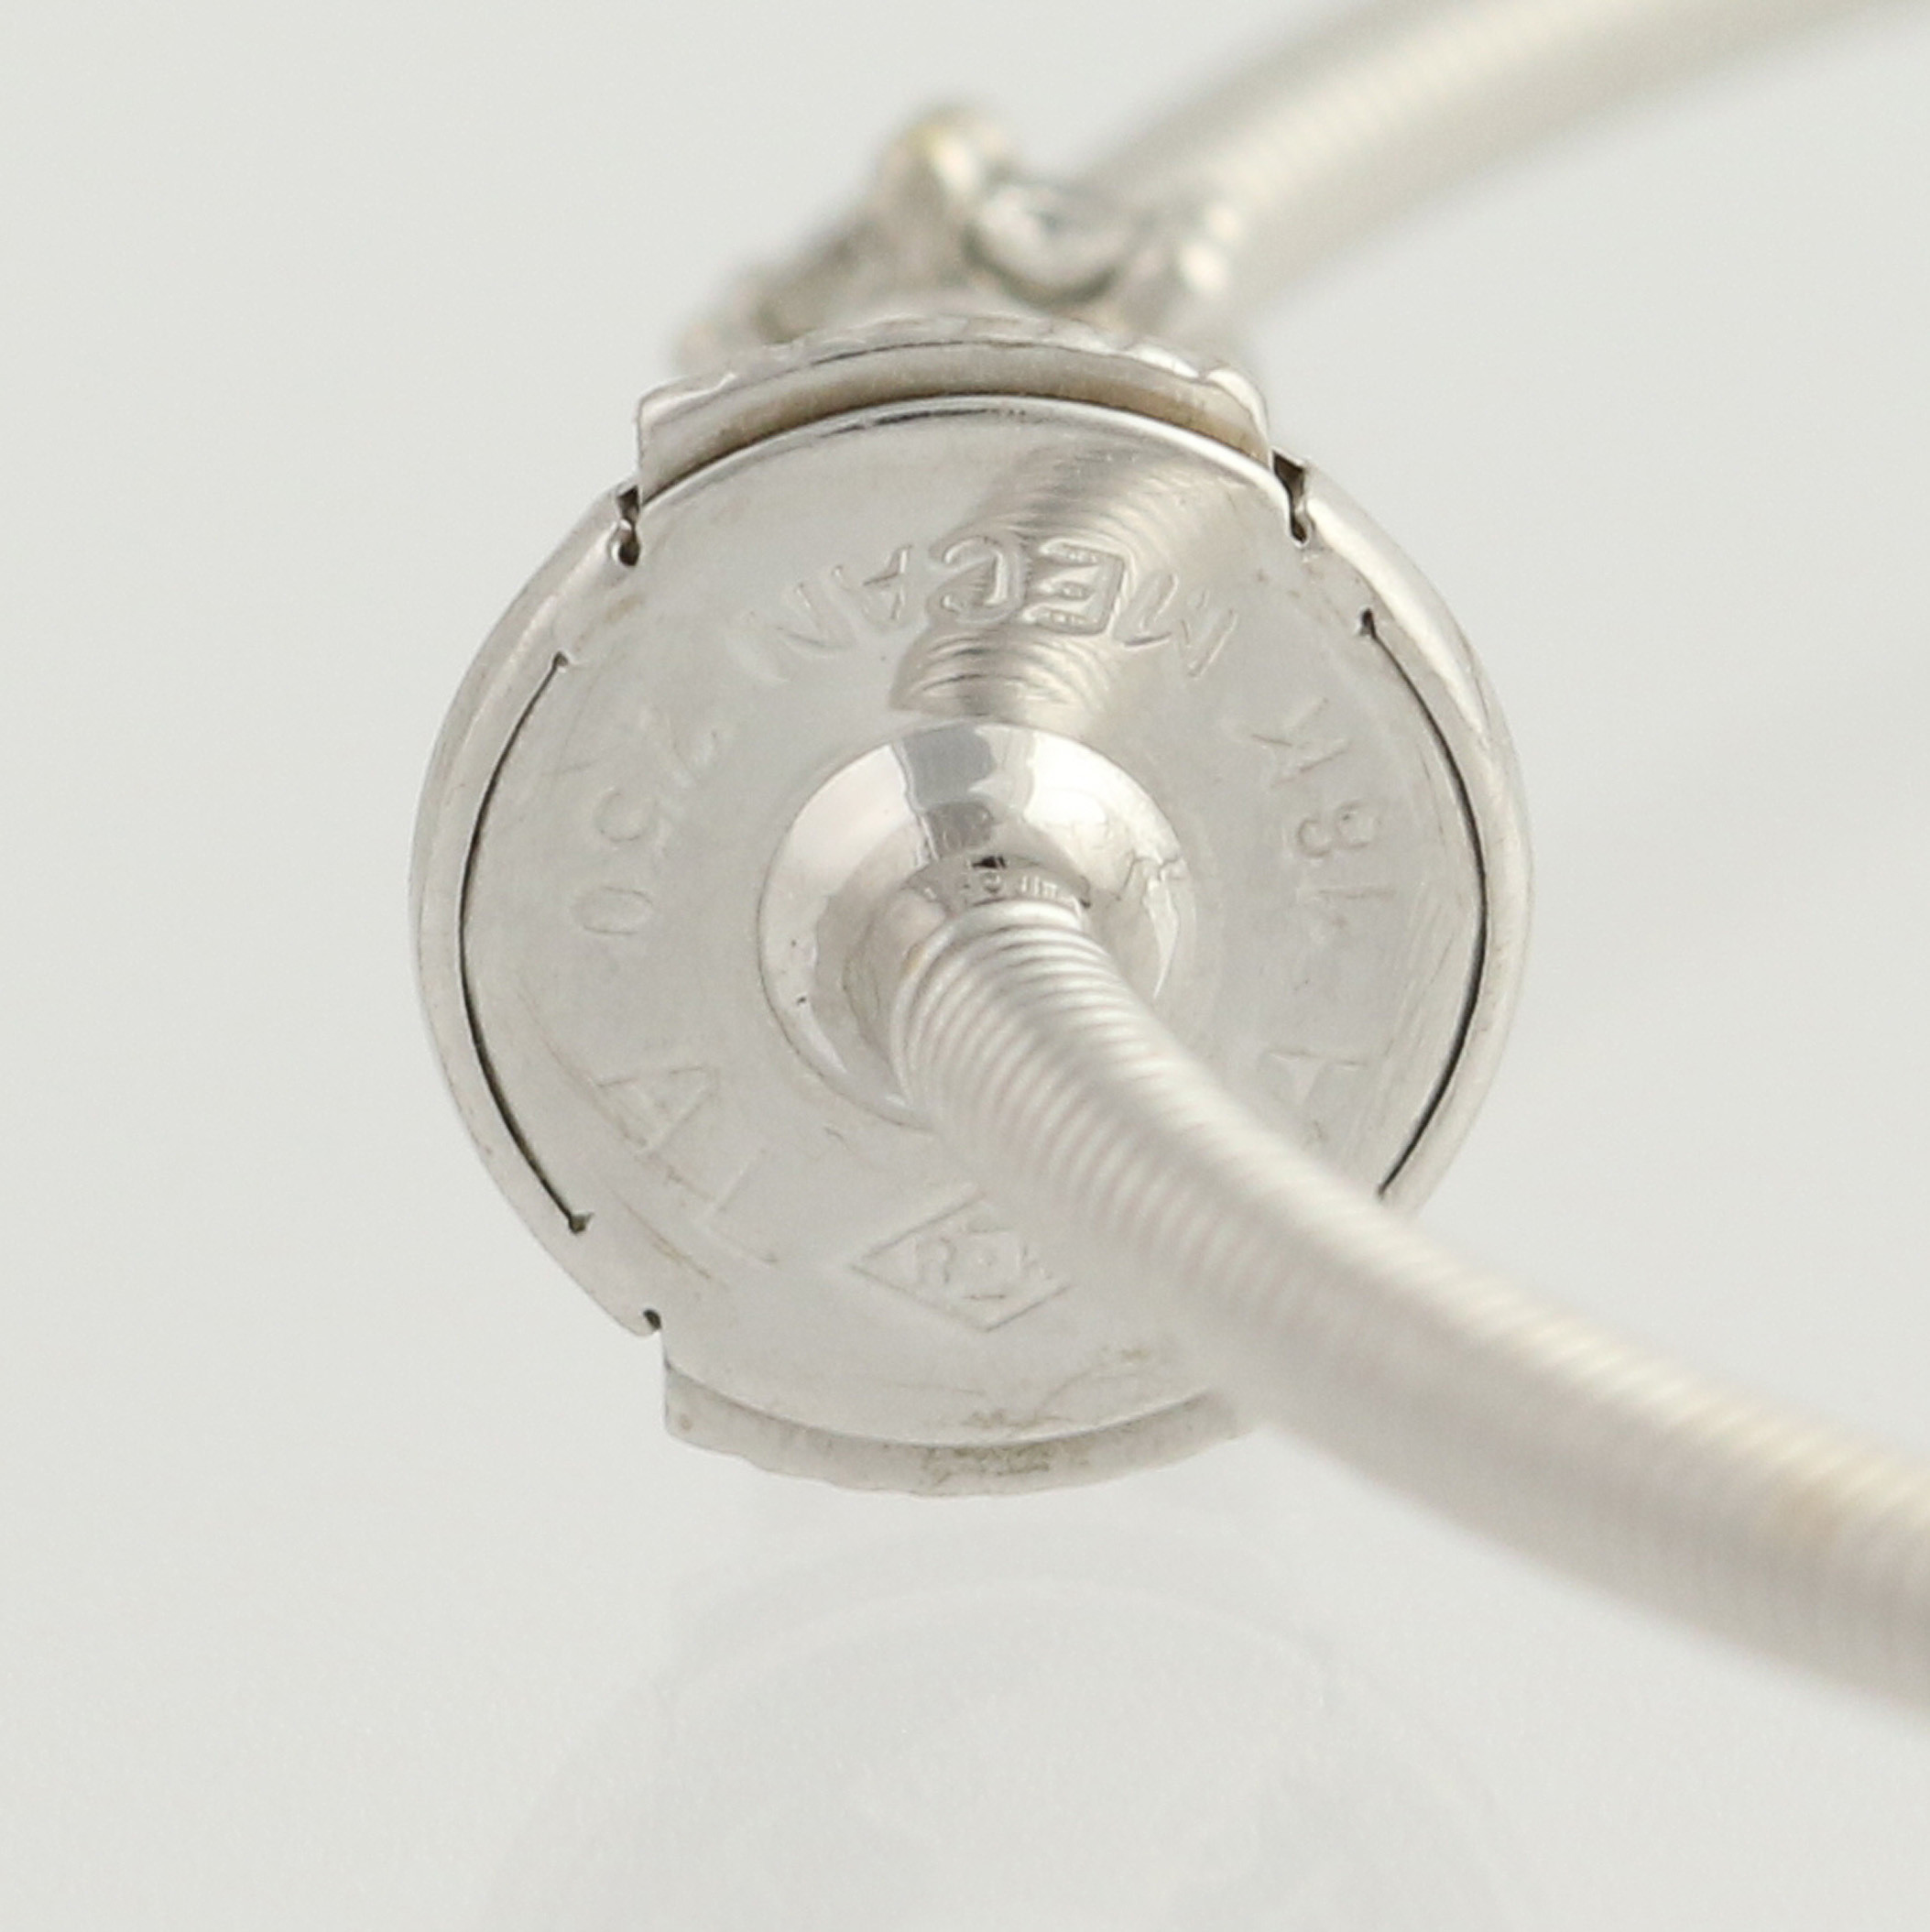 Locking Earring Backs
 Diamond Accented Hoop Earrings 18k White Gold Locking